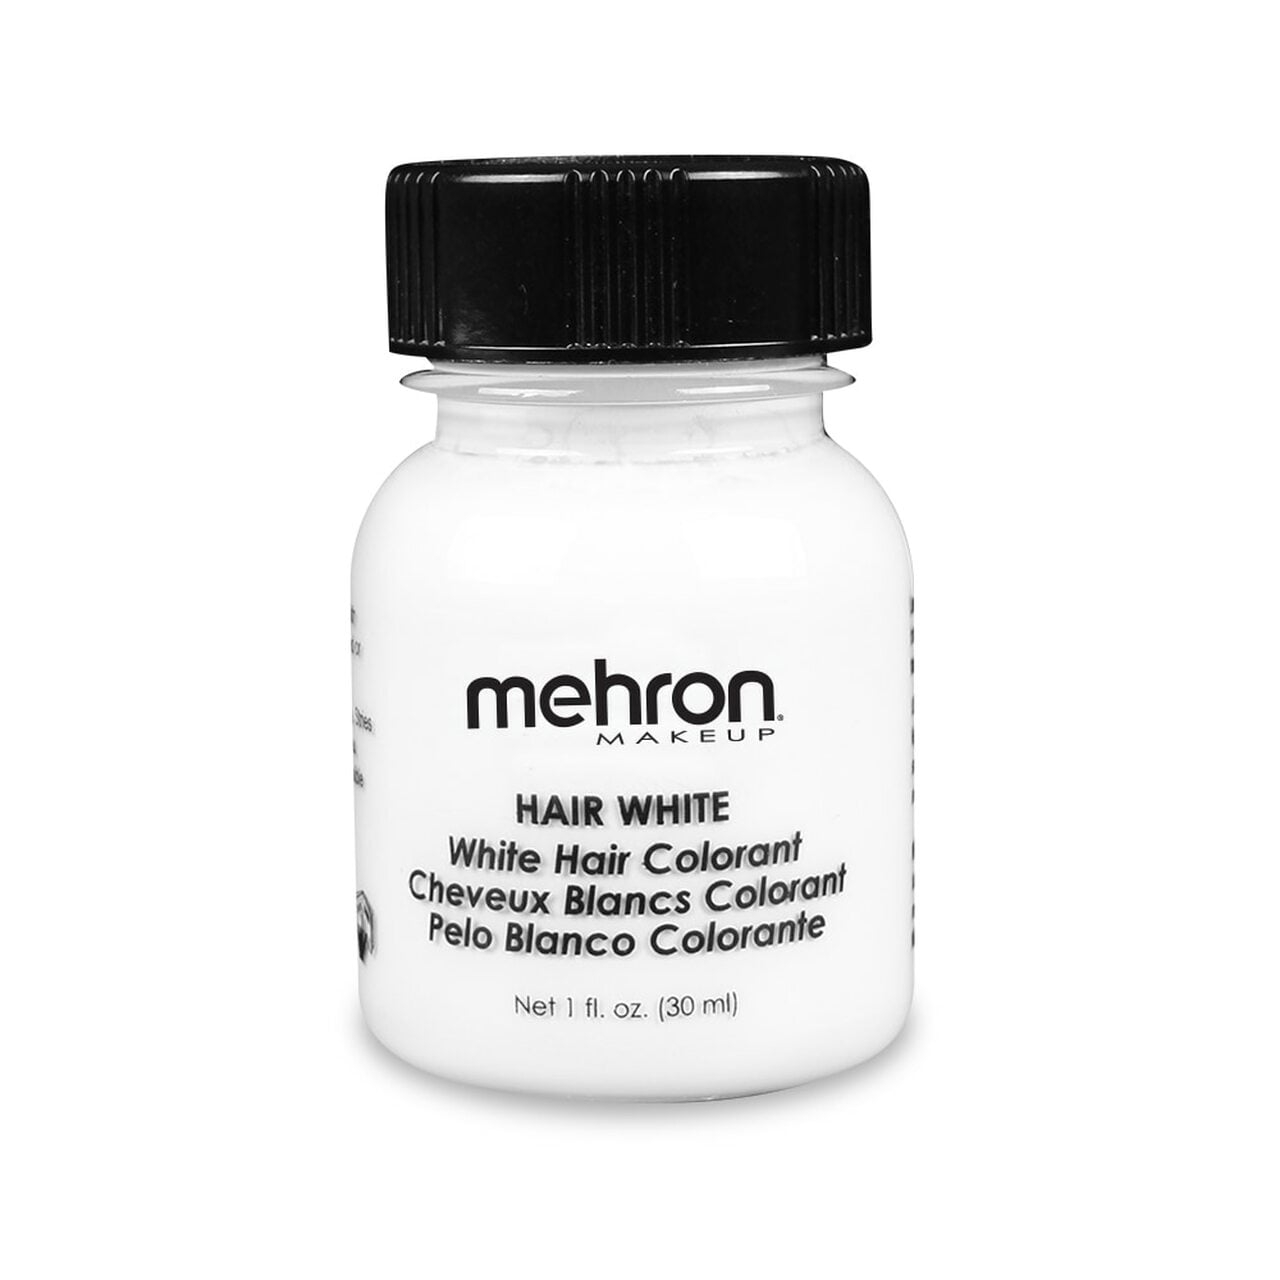 Mehron – Hair White – Liquid – Makeup – Dublin Body Paint